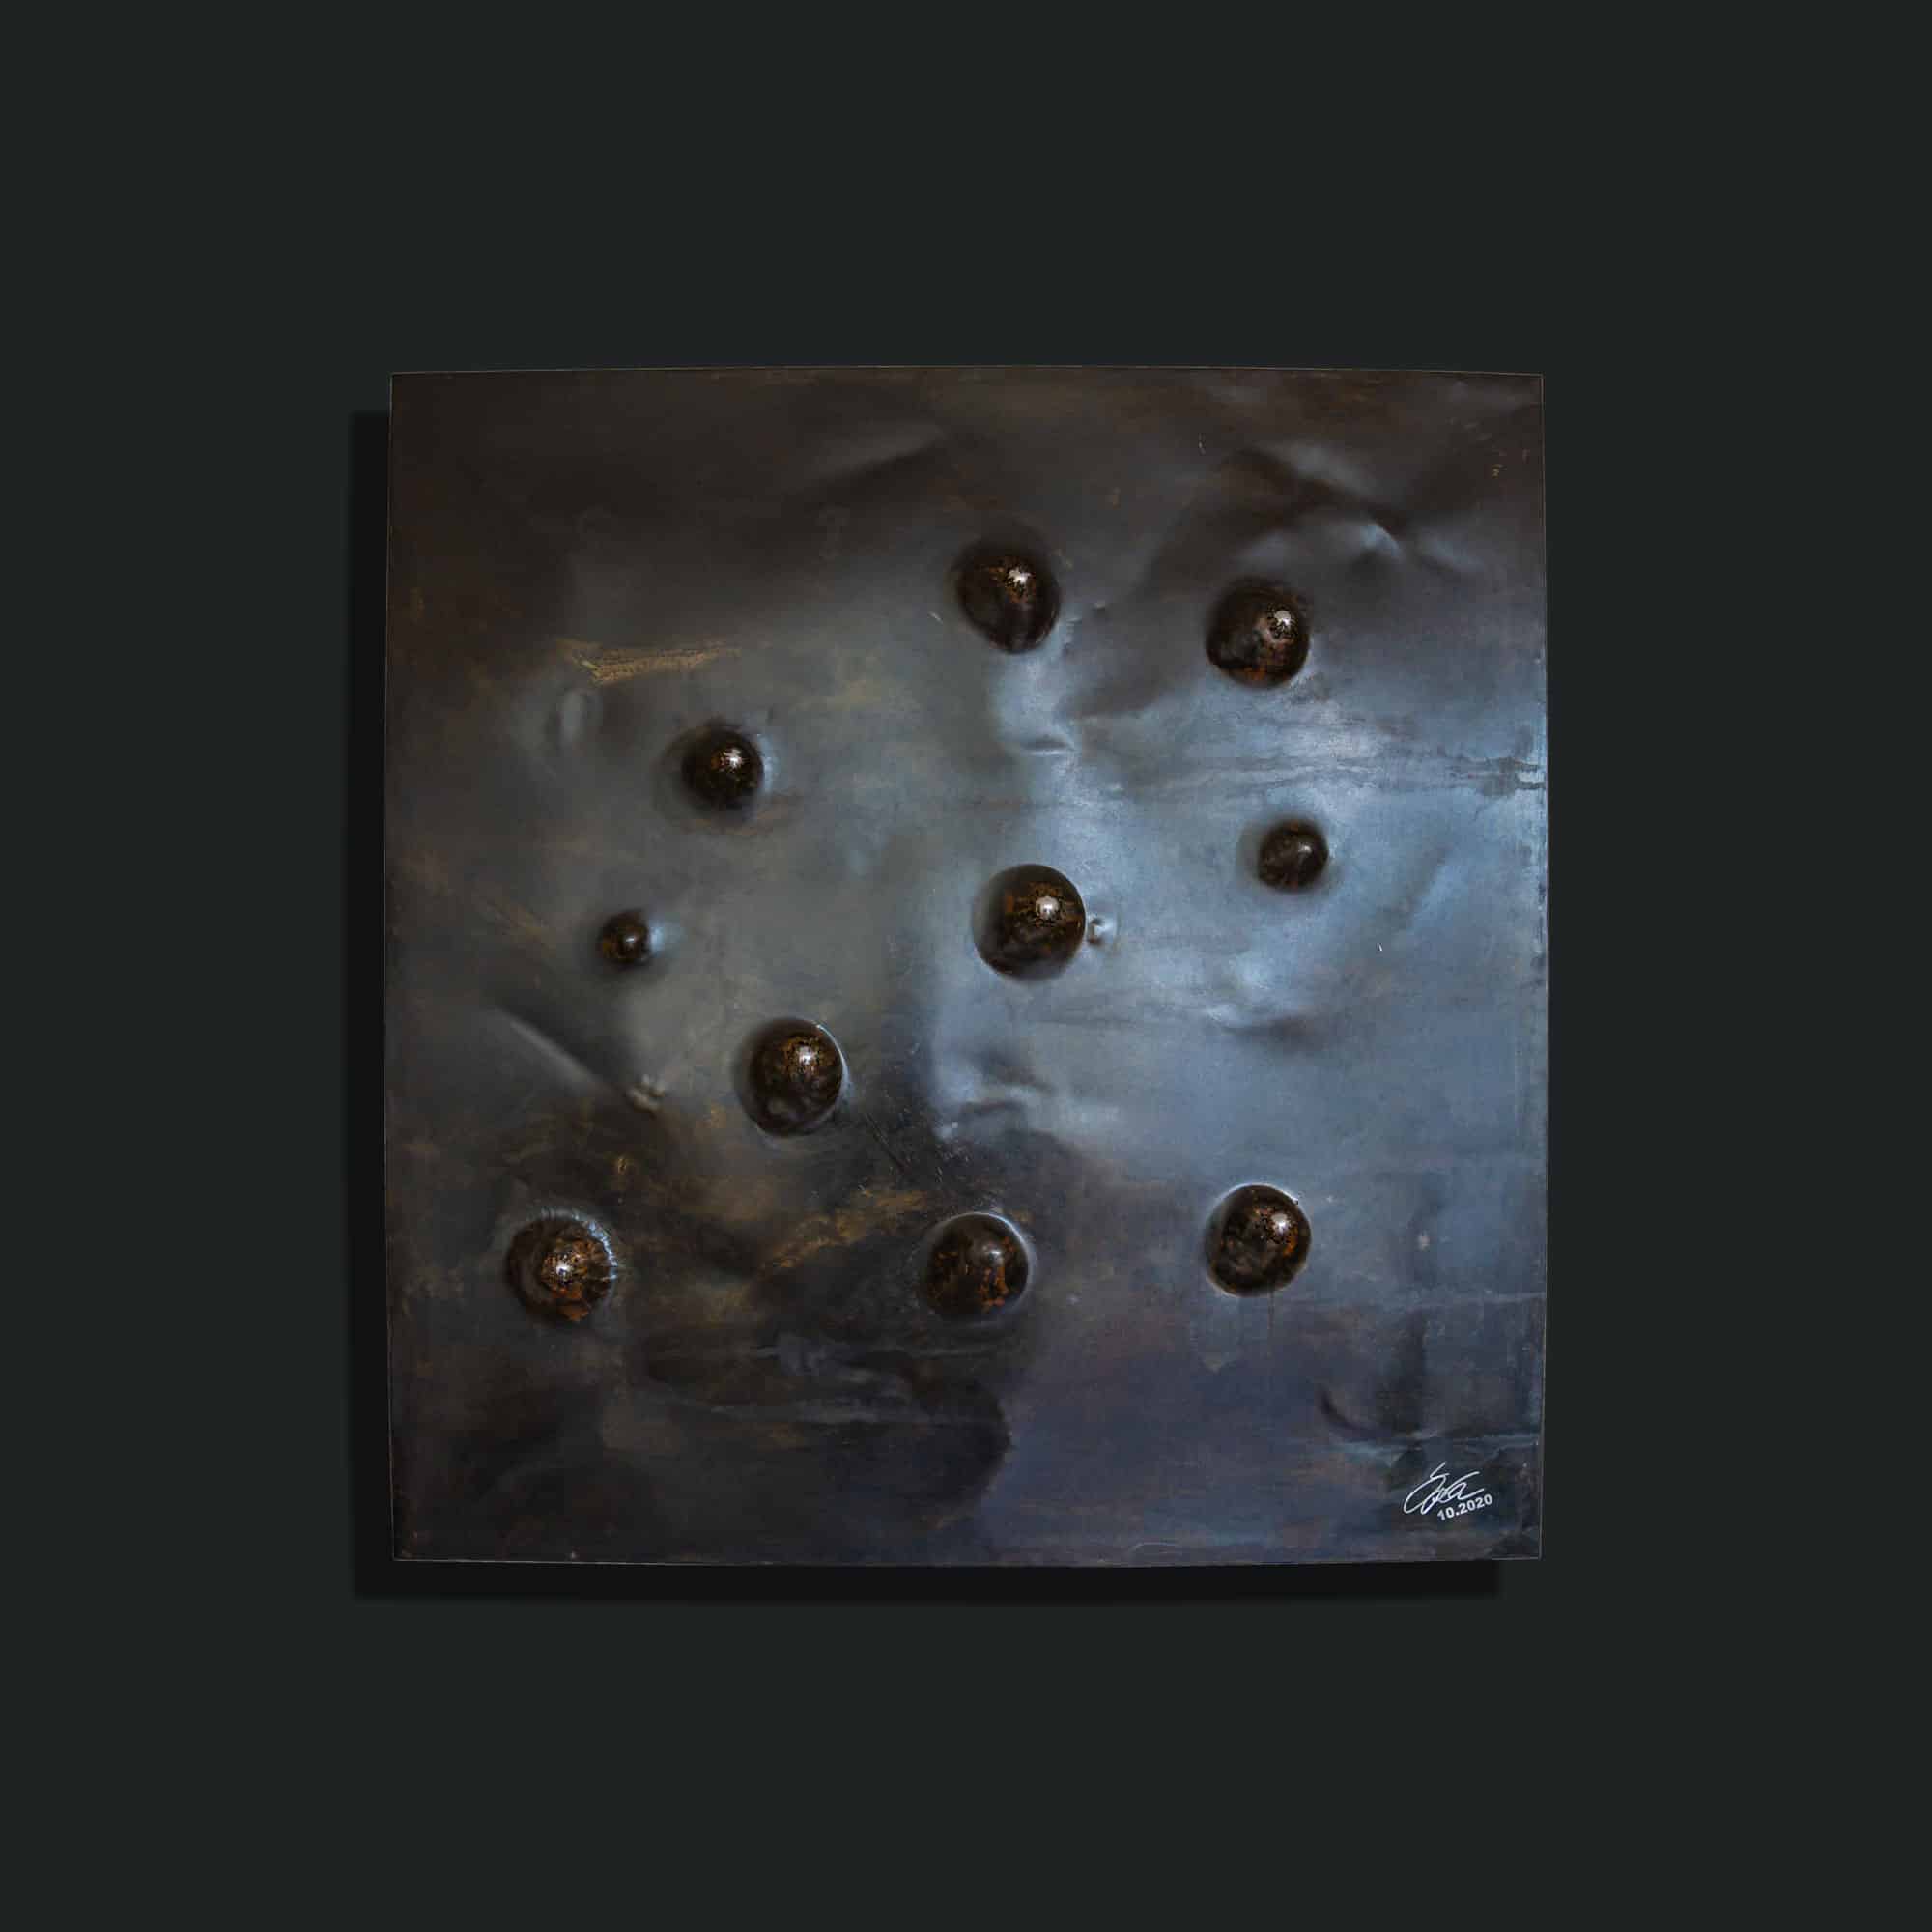 Kunstwerk mit dem Namen „45 Grad“. 7 Kugeln in silber, Füllung schwarz braun brüniert, Rahmen in Edelstahl. Vom Stahlbildhauer im Atelier Daniel Springer